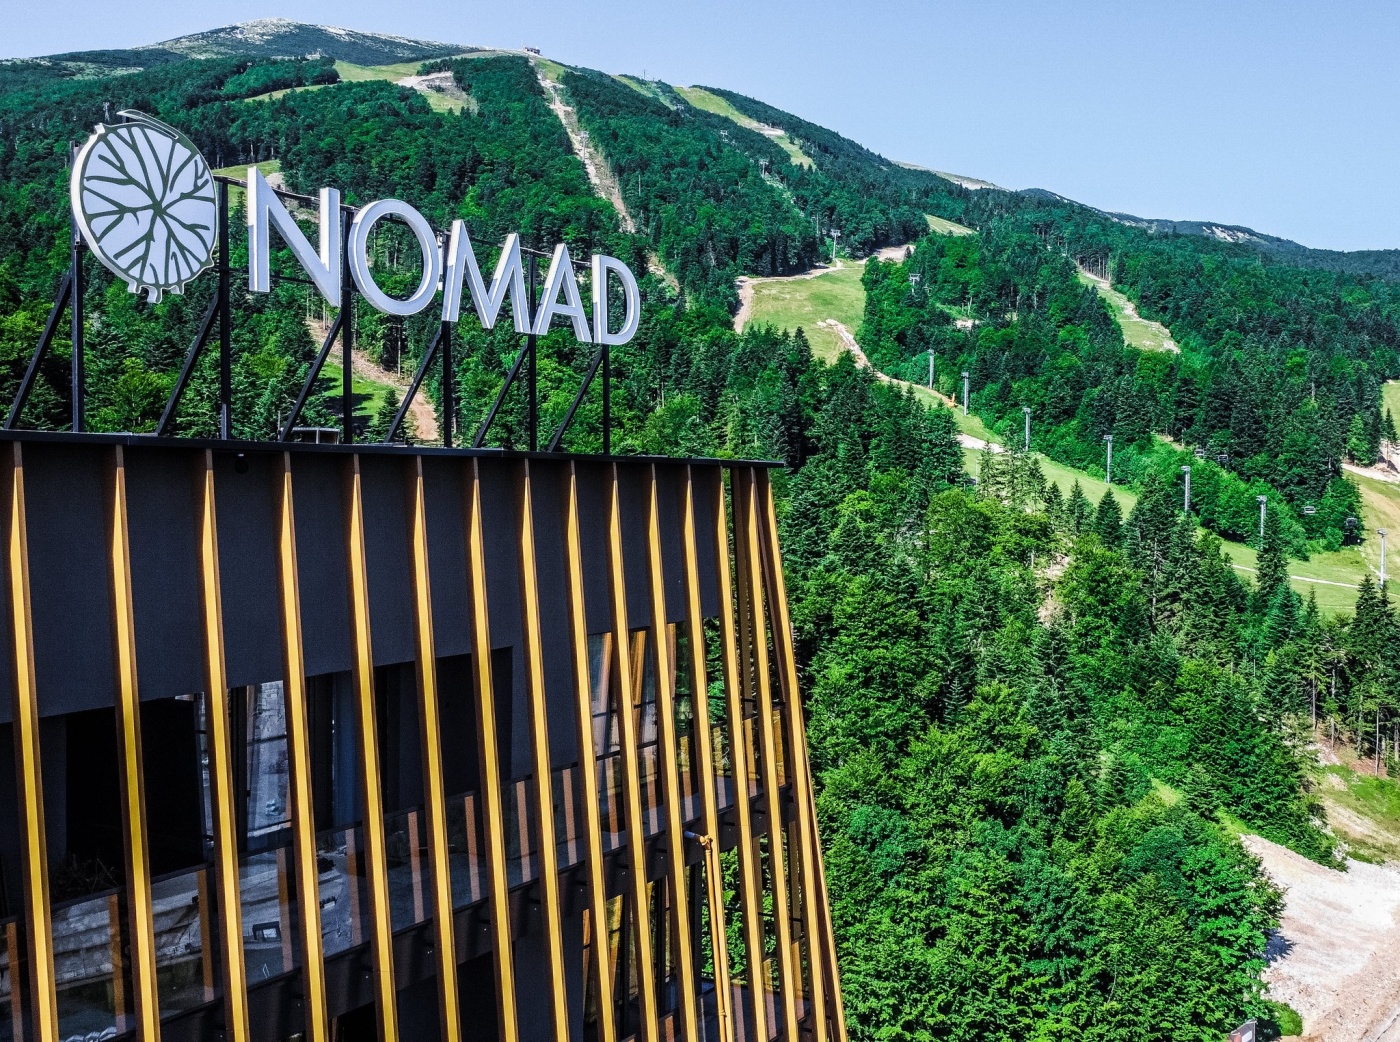 Hotel Nomad